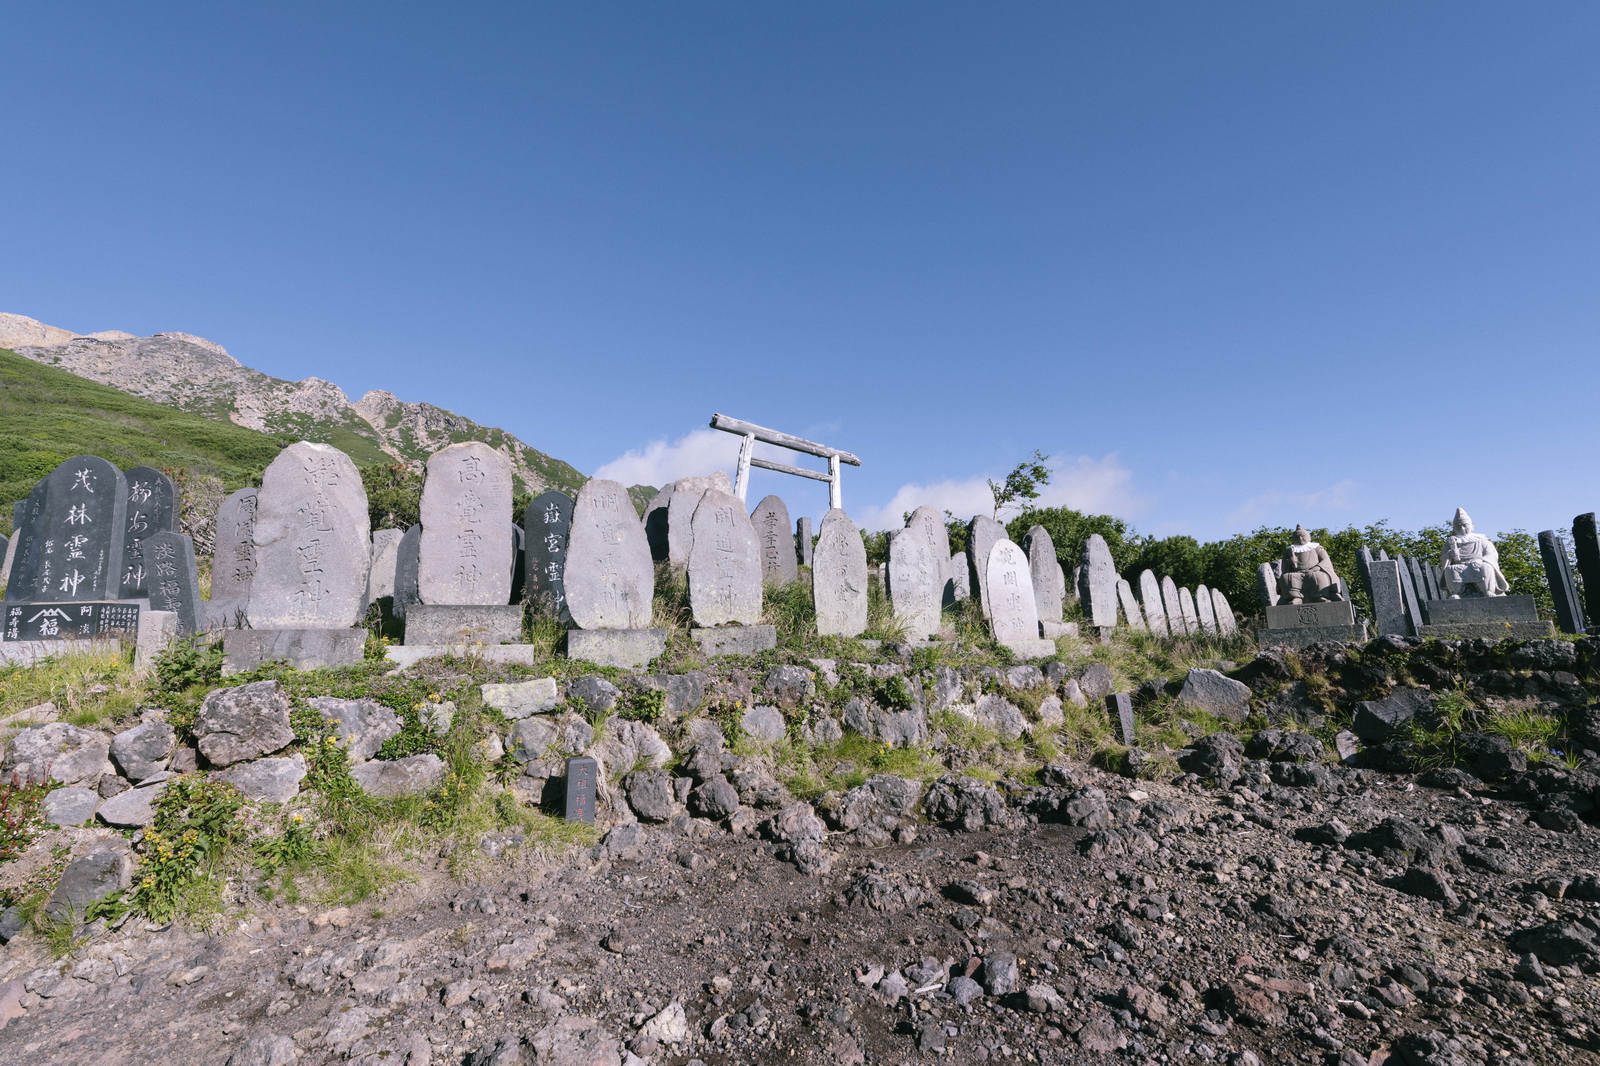 「御嶽山登山道沿いに並ぶ石碑 | フリー素材のぱくたそ」の写真